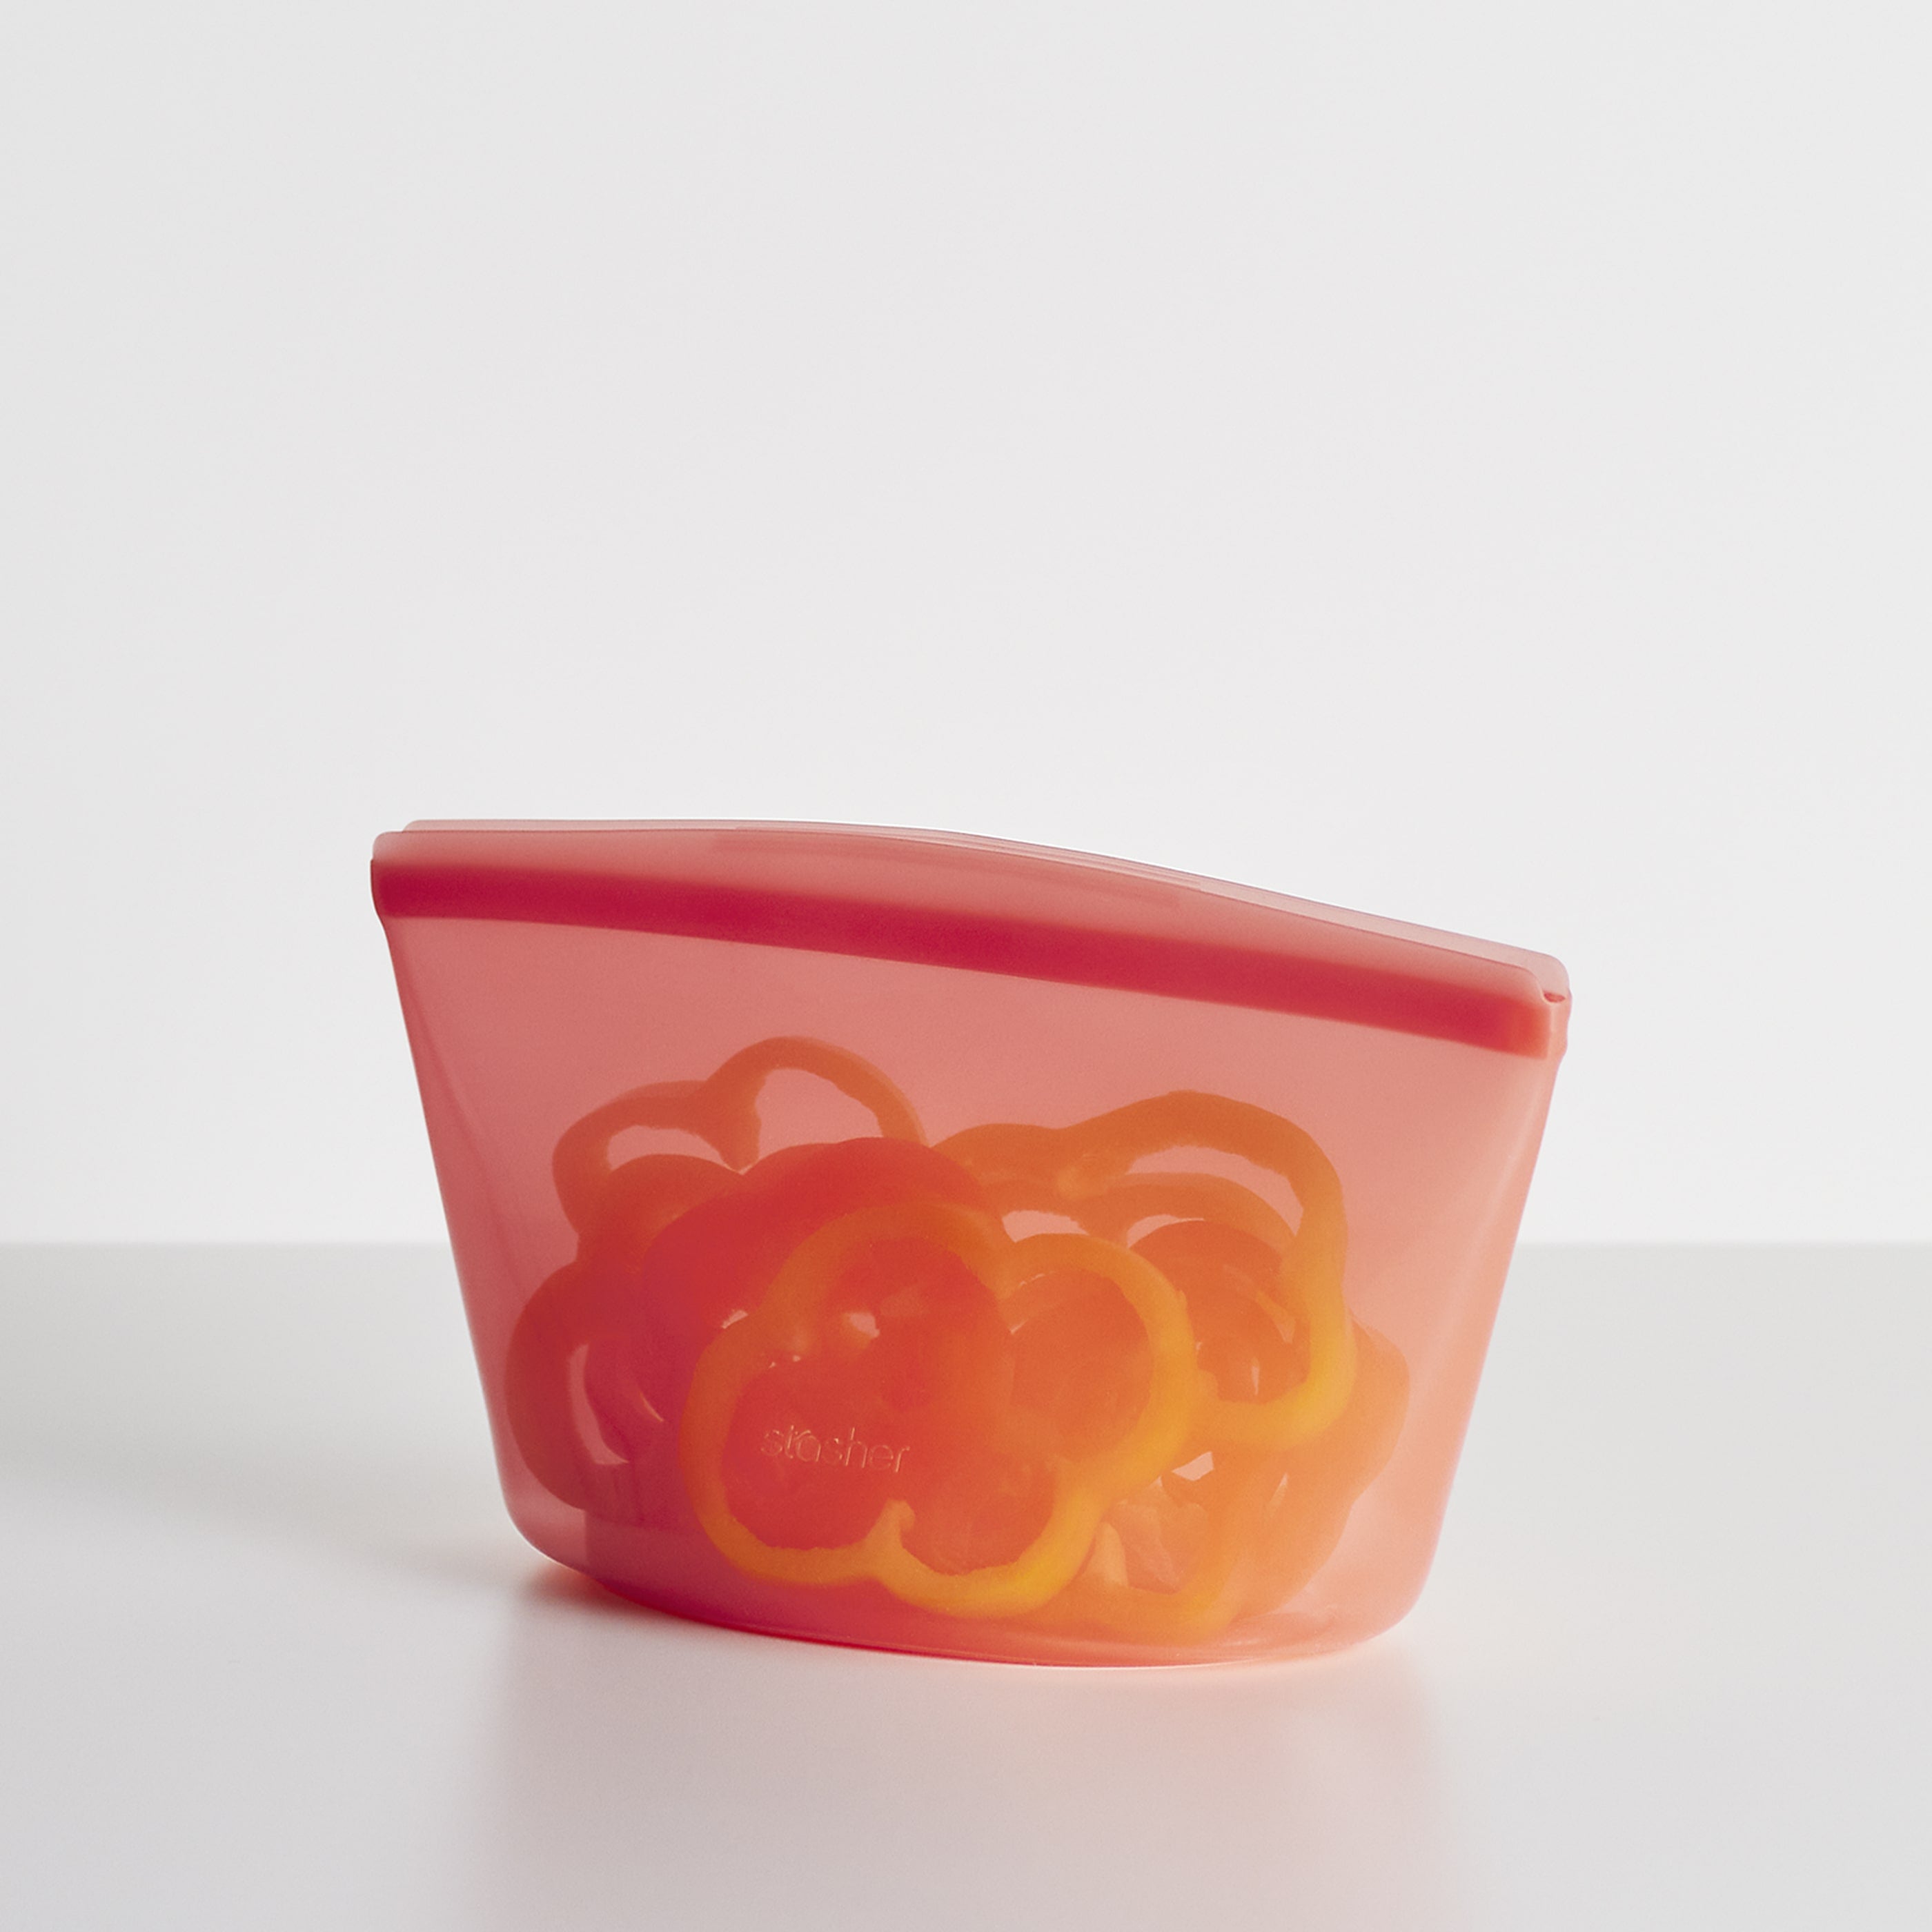 Styrofoam Bowls: Soup Bowls & More in Bulk